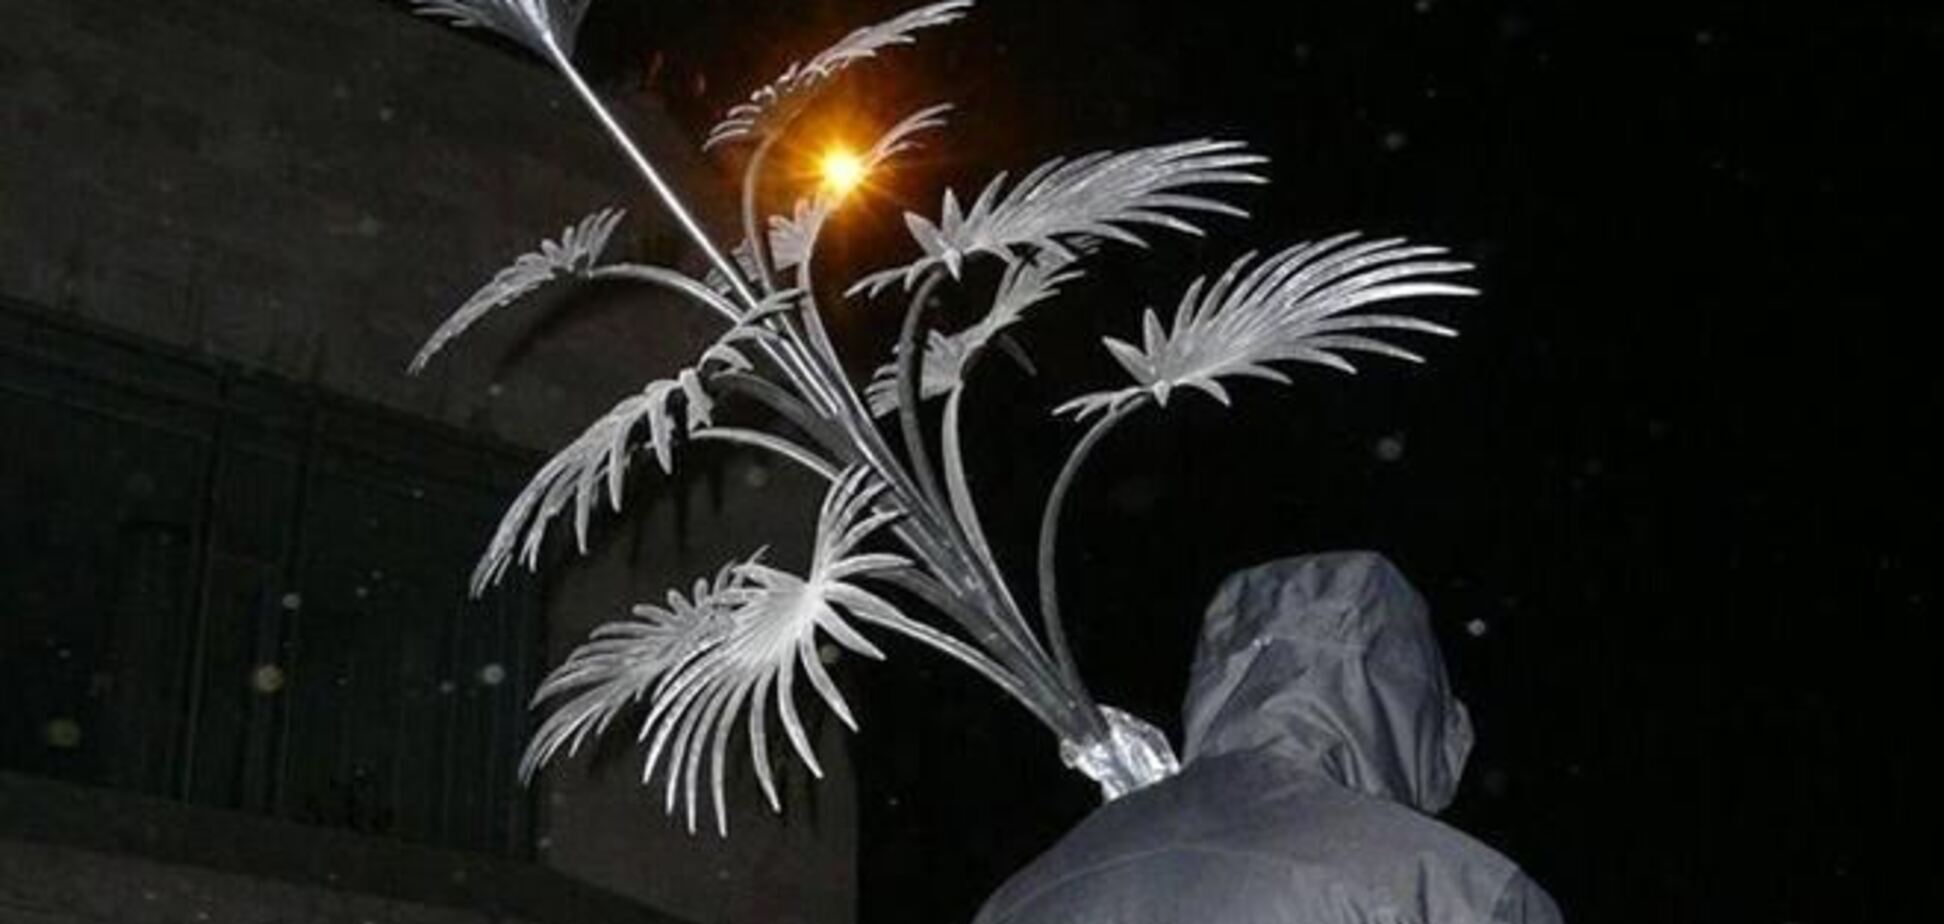 Сепаратисти вкрали символ Донецької області - пальму Мерцалова